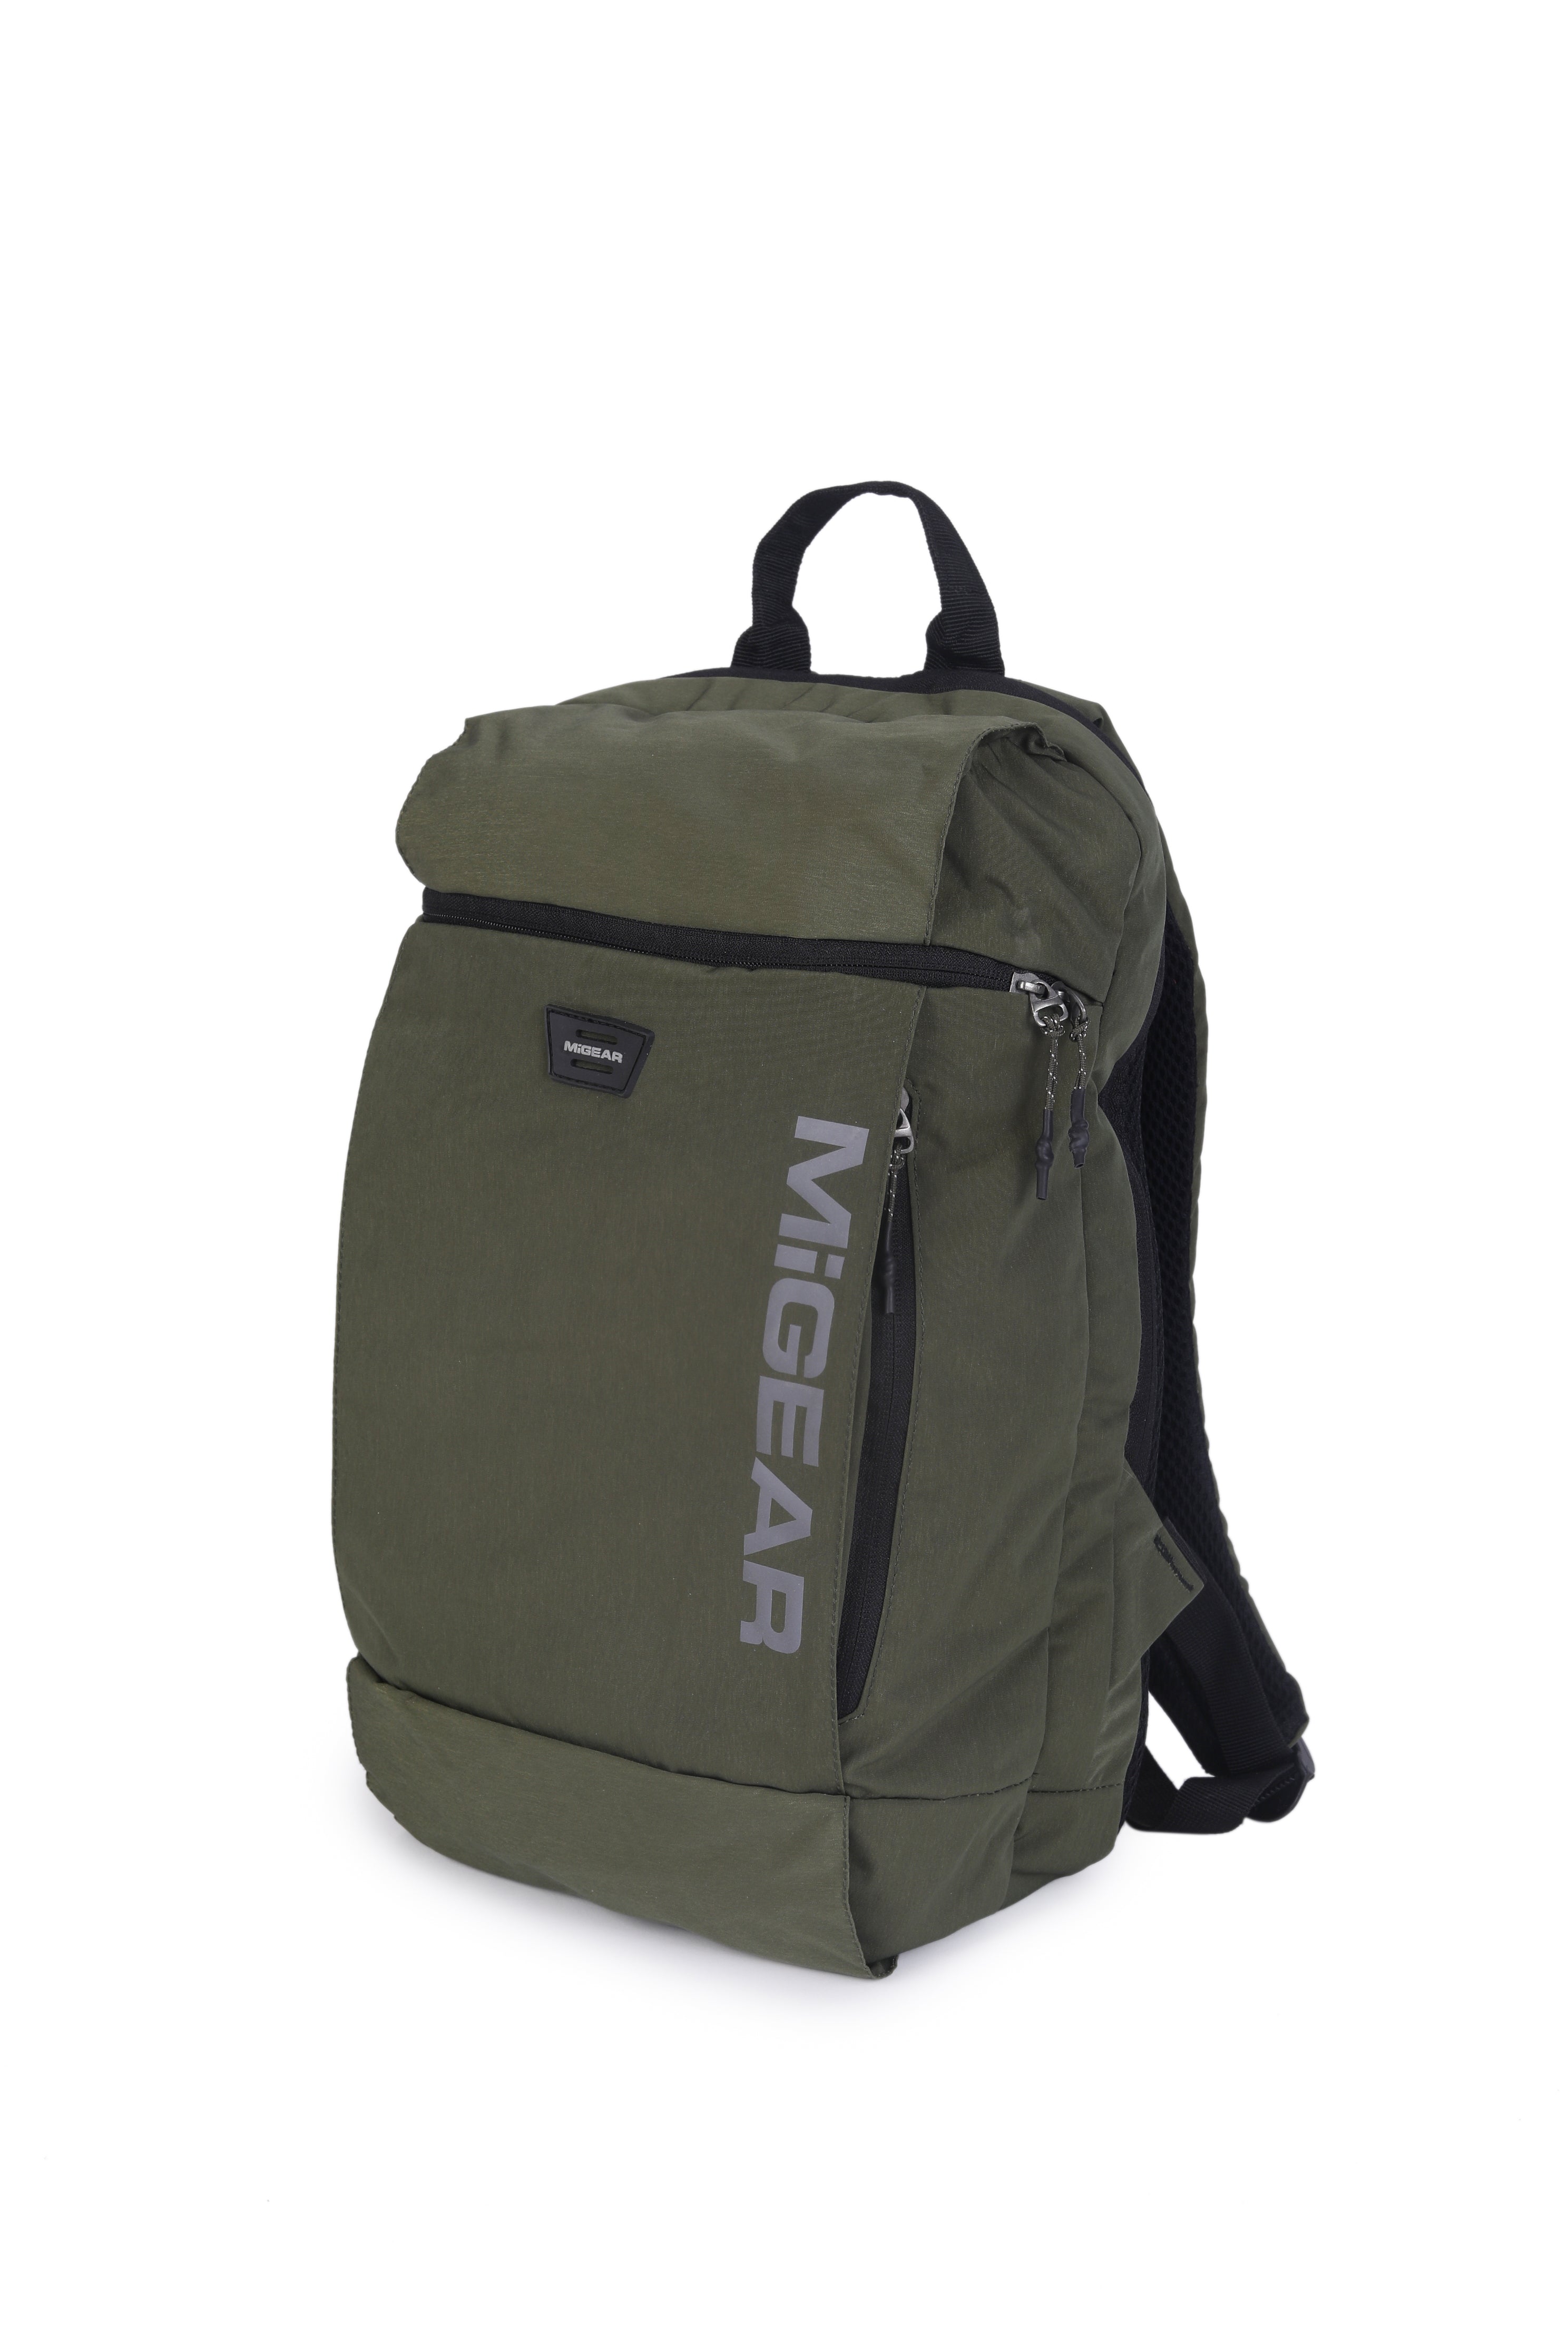 Green RoamRider Backpack